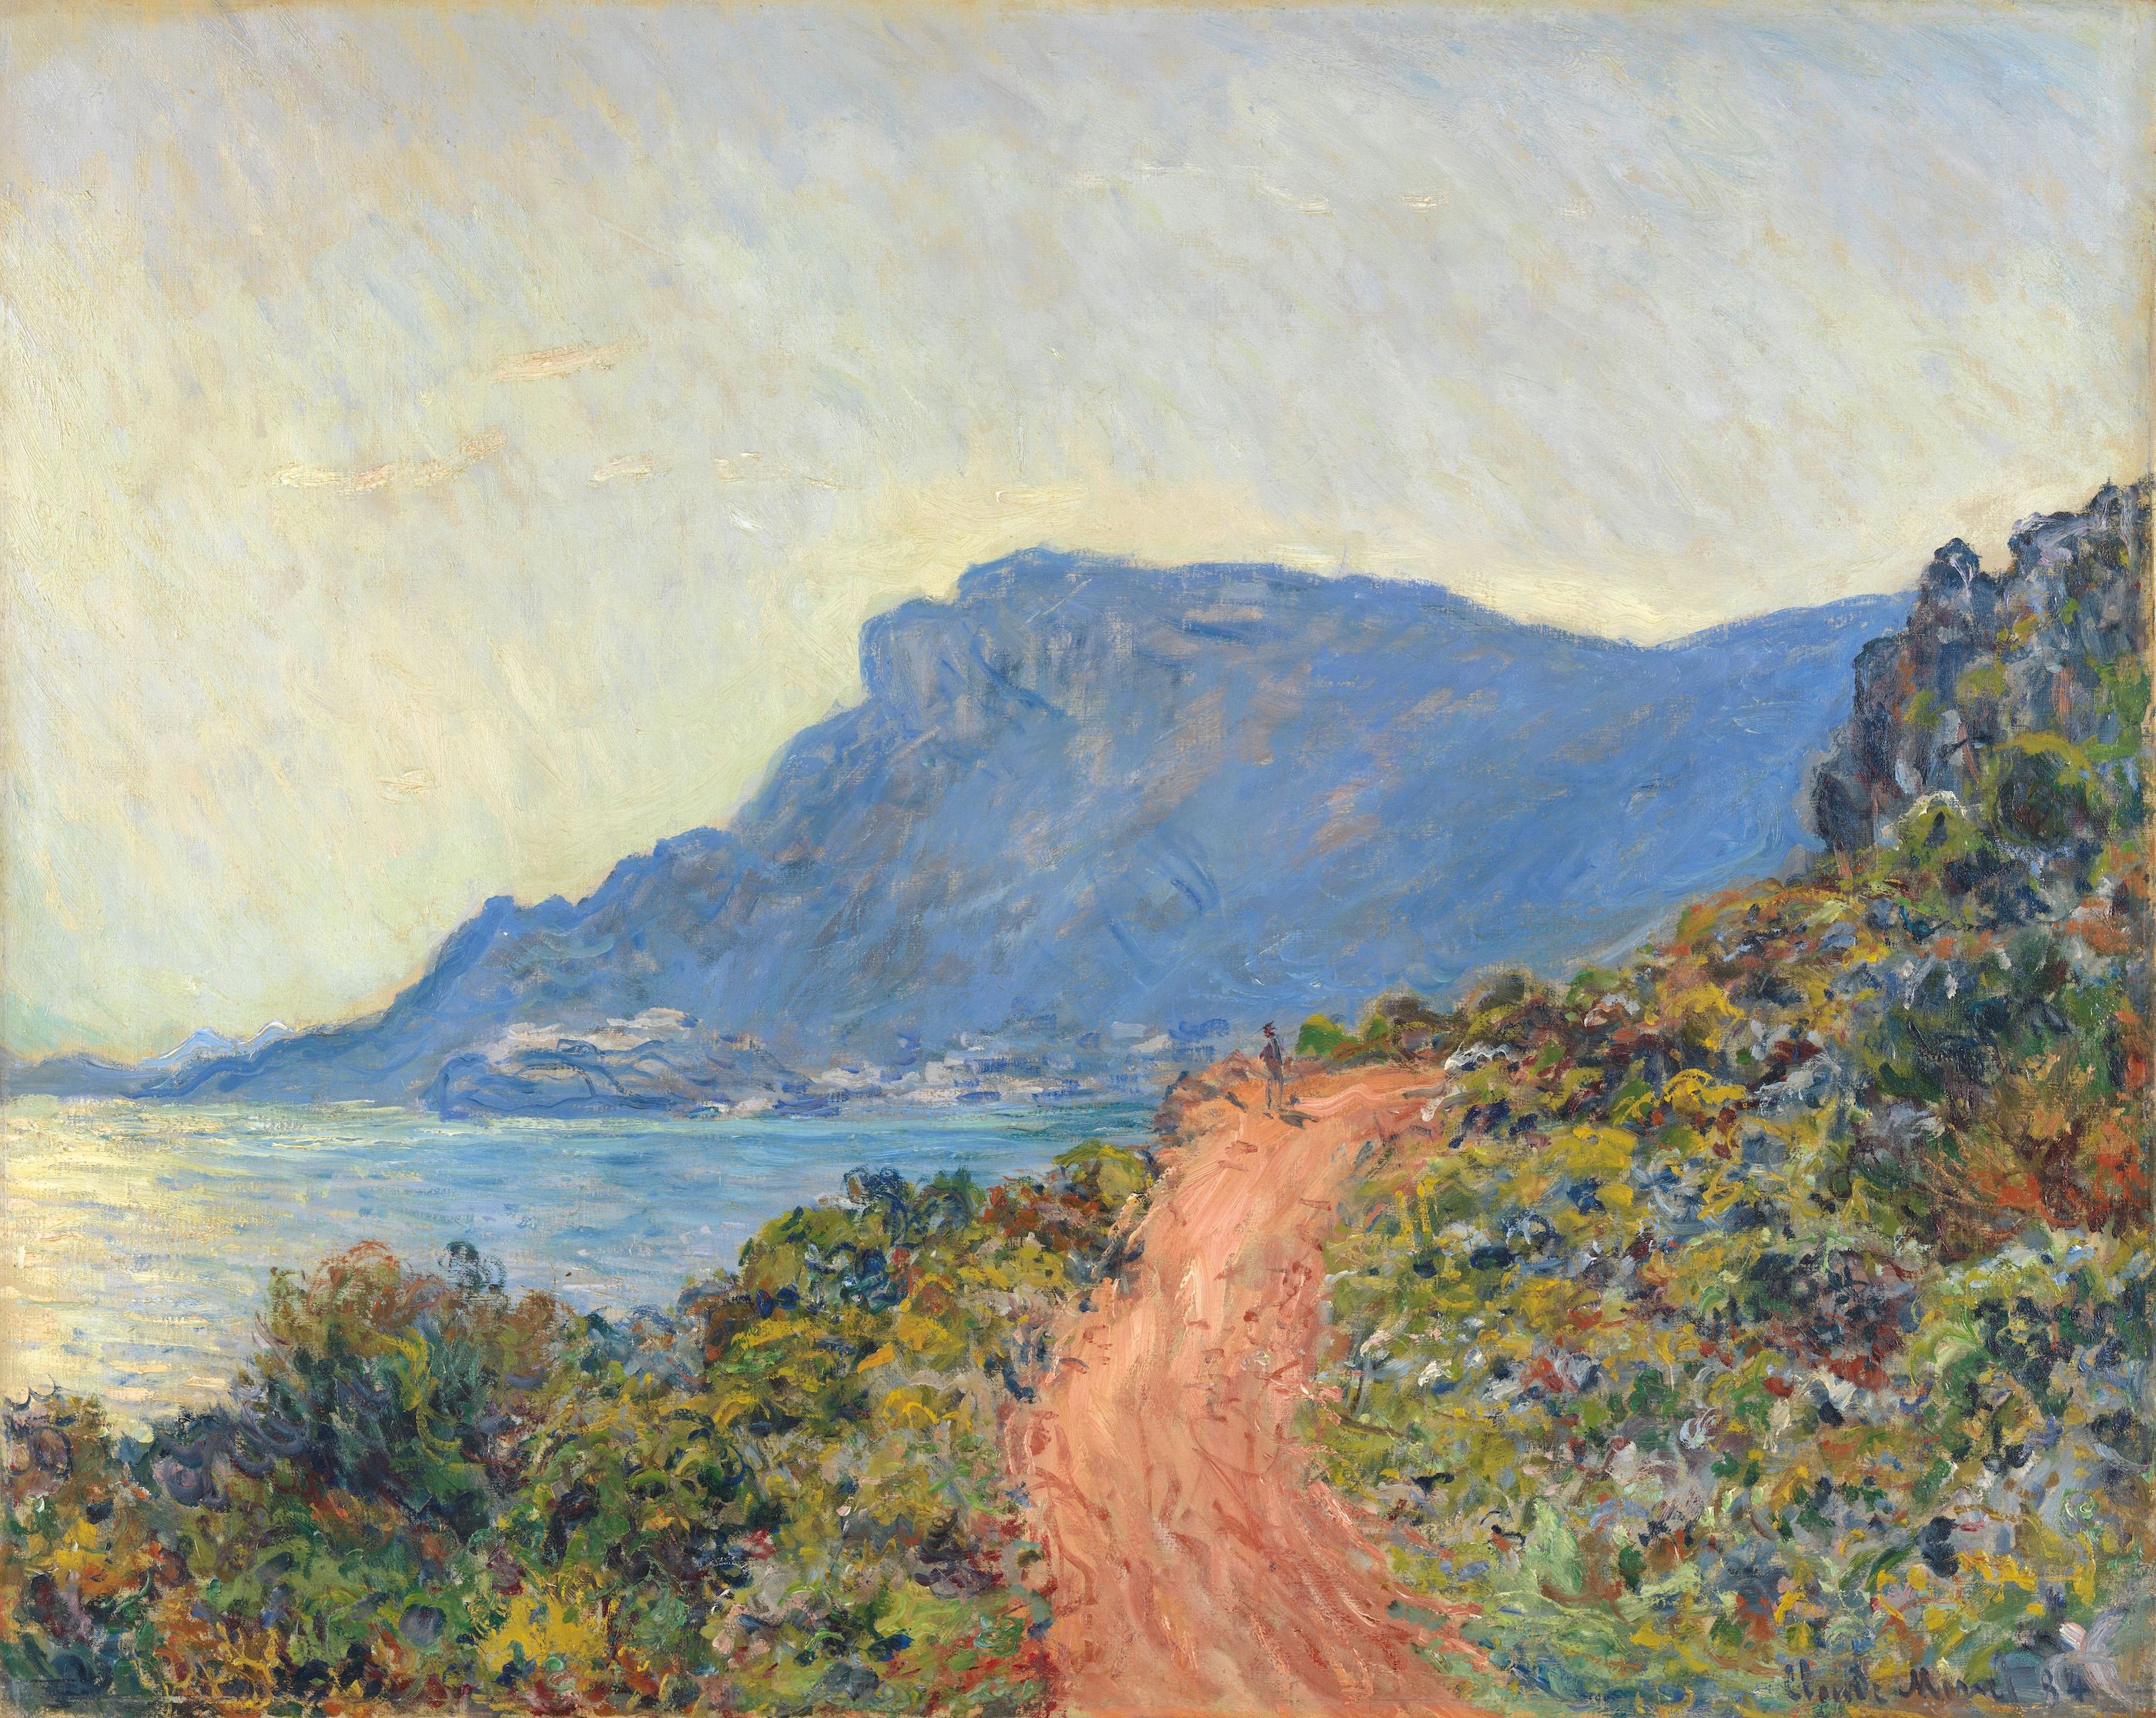 La Corniche w pobliżu Monako by Claude Monet - 1884 - 75 × 94 cm 